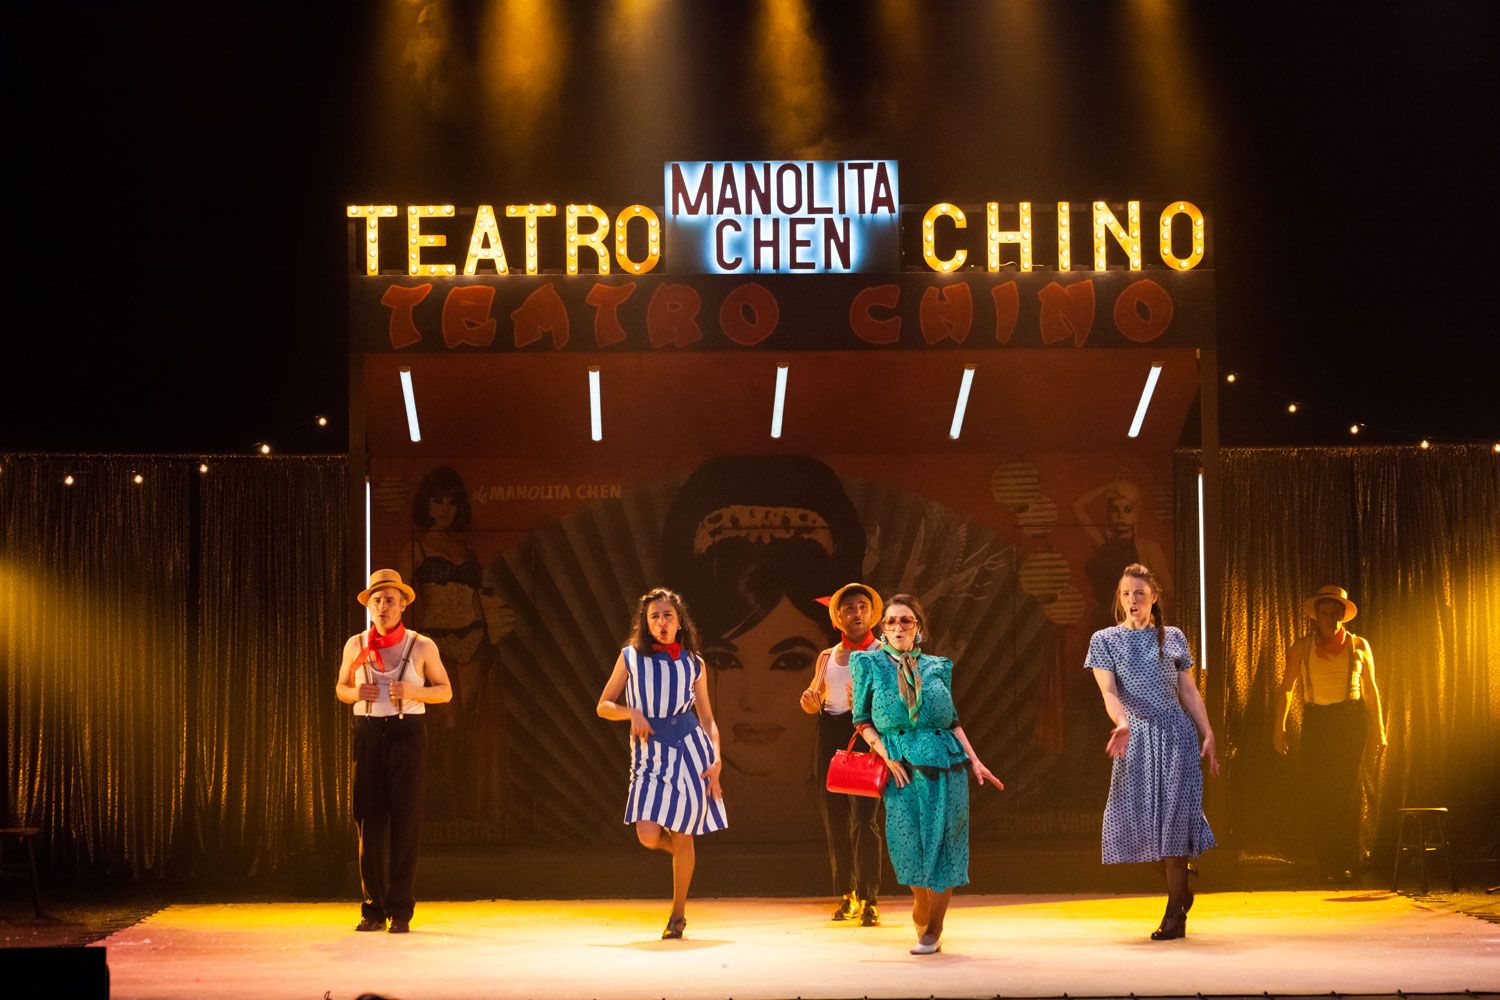 Villamarta se transforma en el Teatro Chino de Manolita Chen.